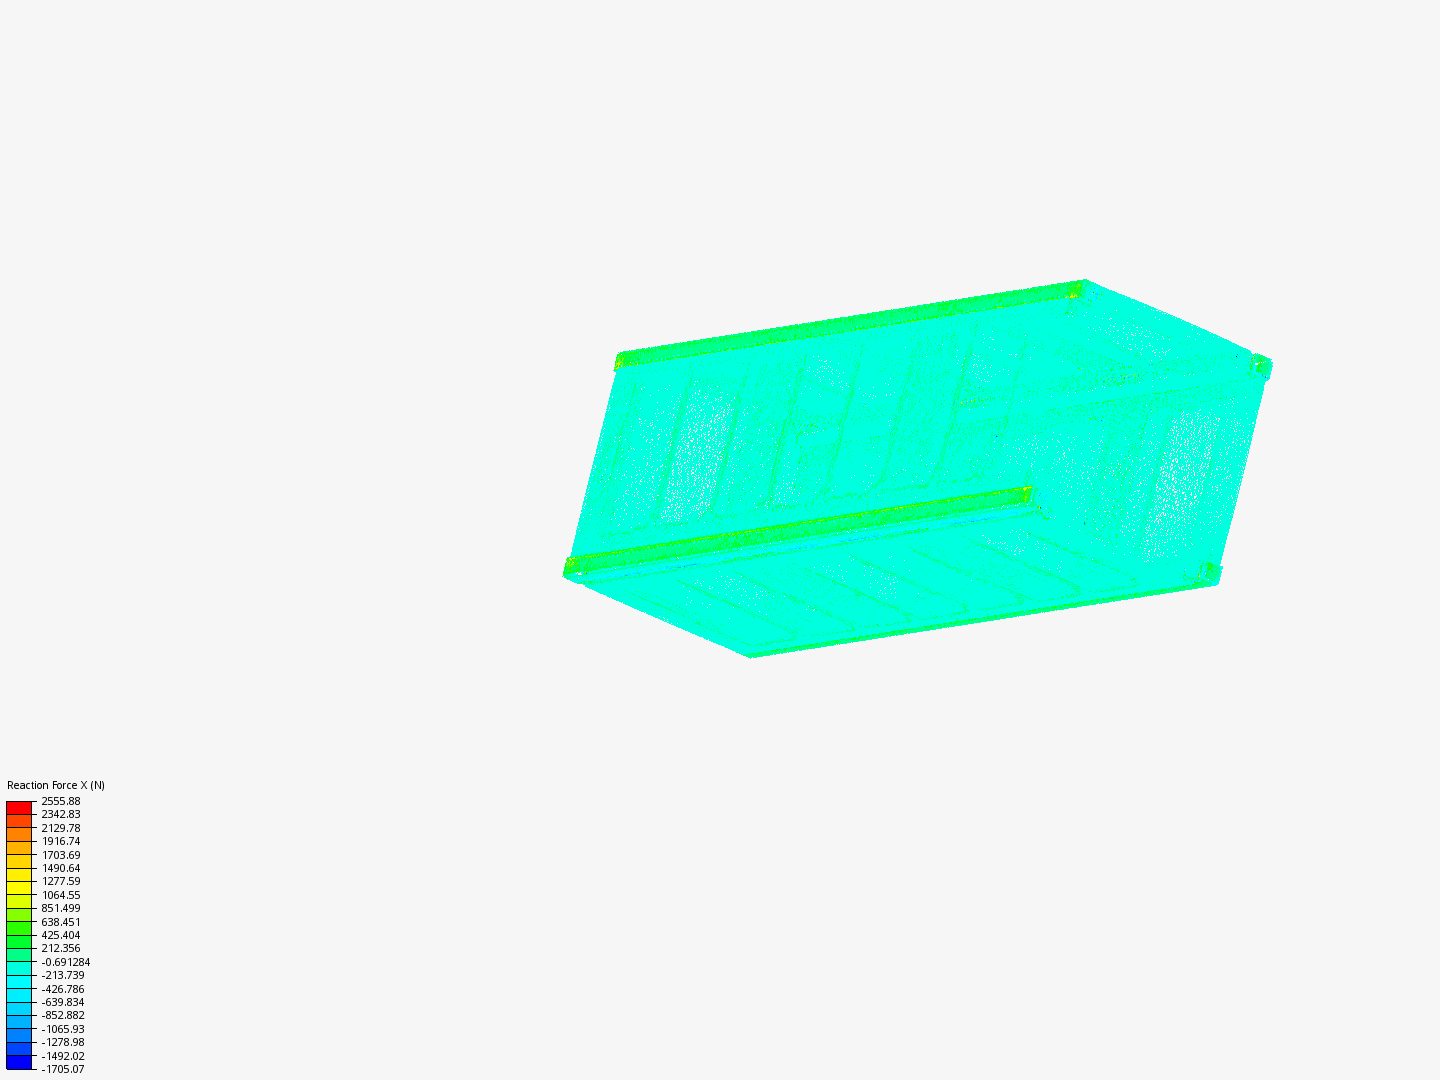 Cubesat image